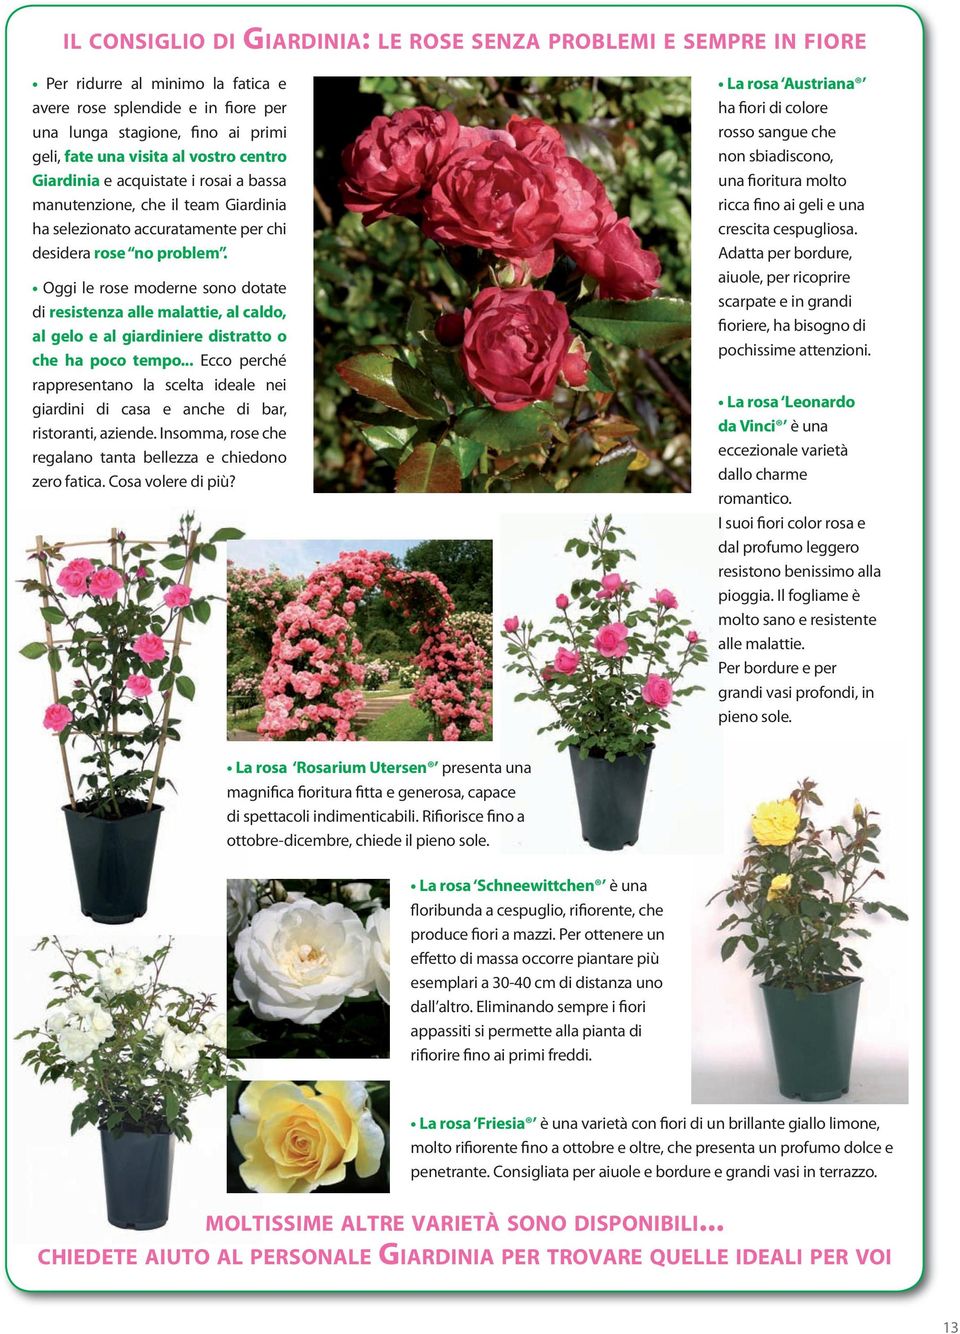 Oggi le rose moderne sono dotate di resistenza alle malattie, al caldo, al gelo e al giardiniere distratto o che ha poco tempo.